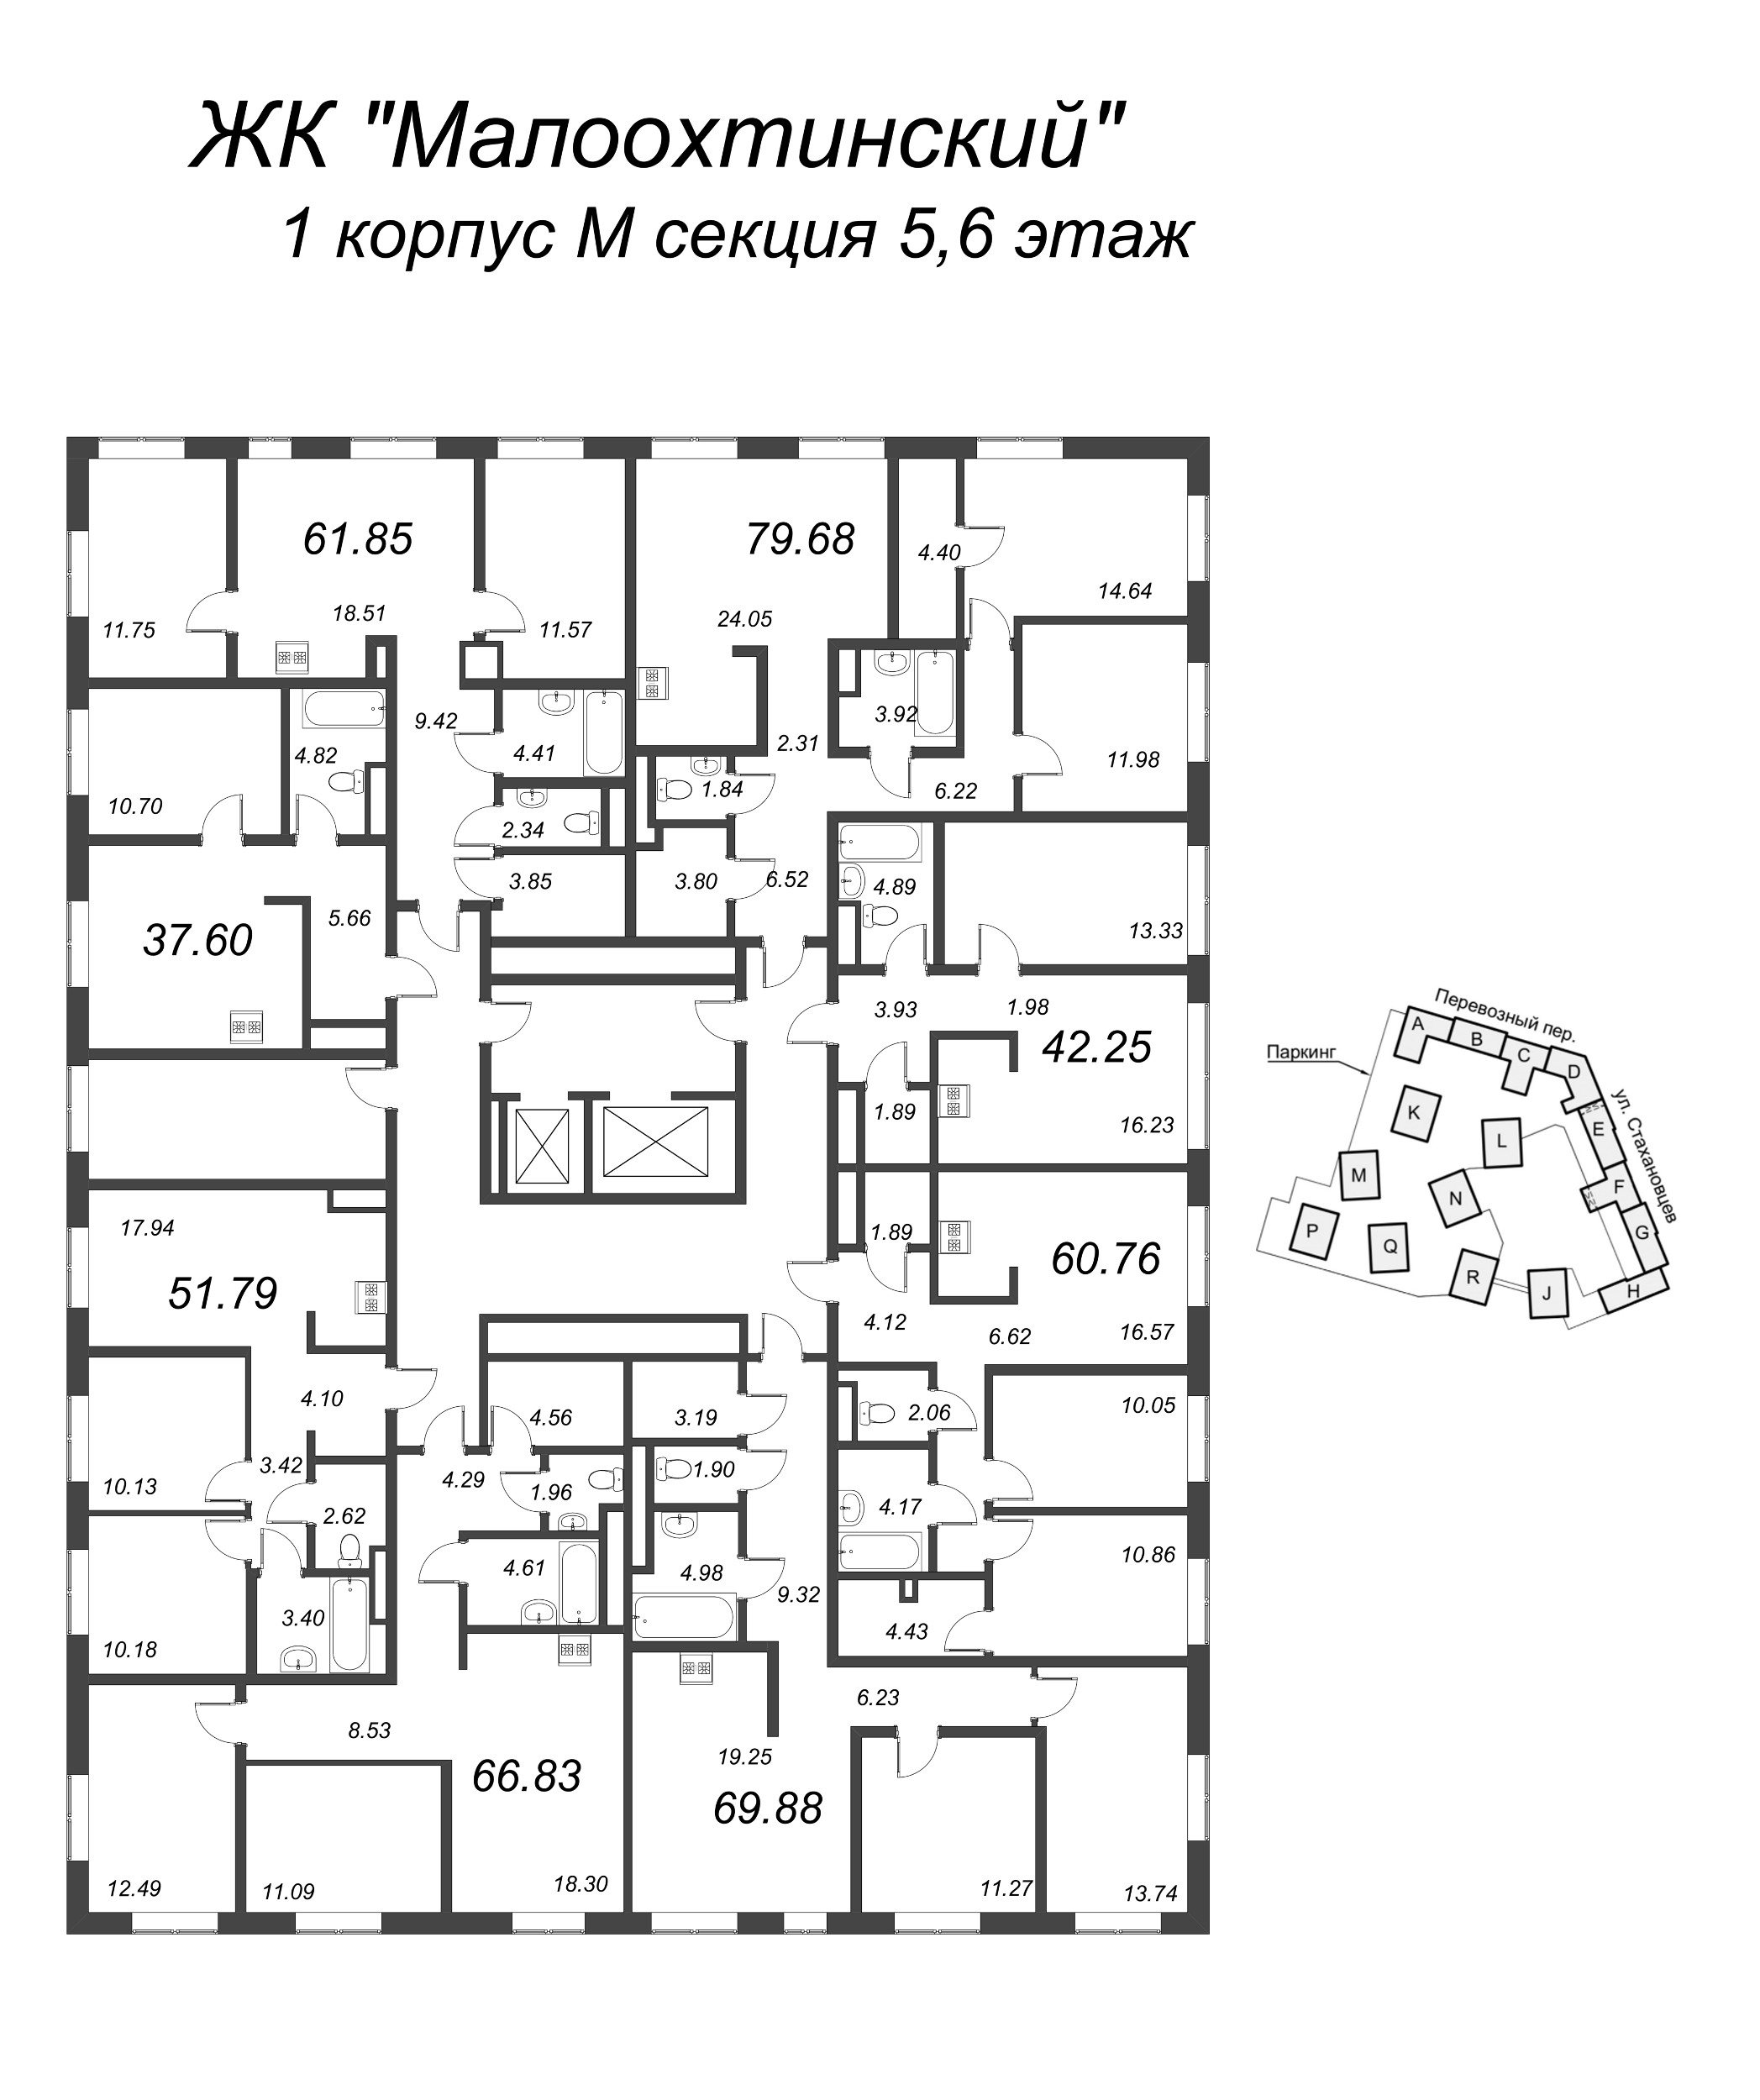 3-комнатная (Евро) квартира, 71.7 м² в ЖК "Малоохтинский, 68" - планировка этажа